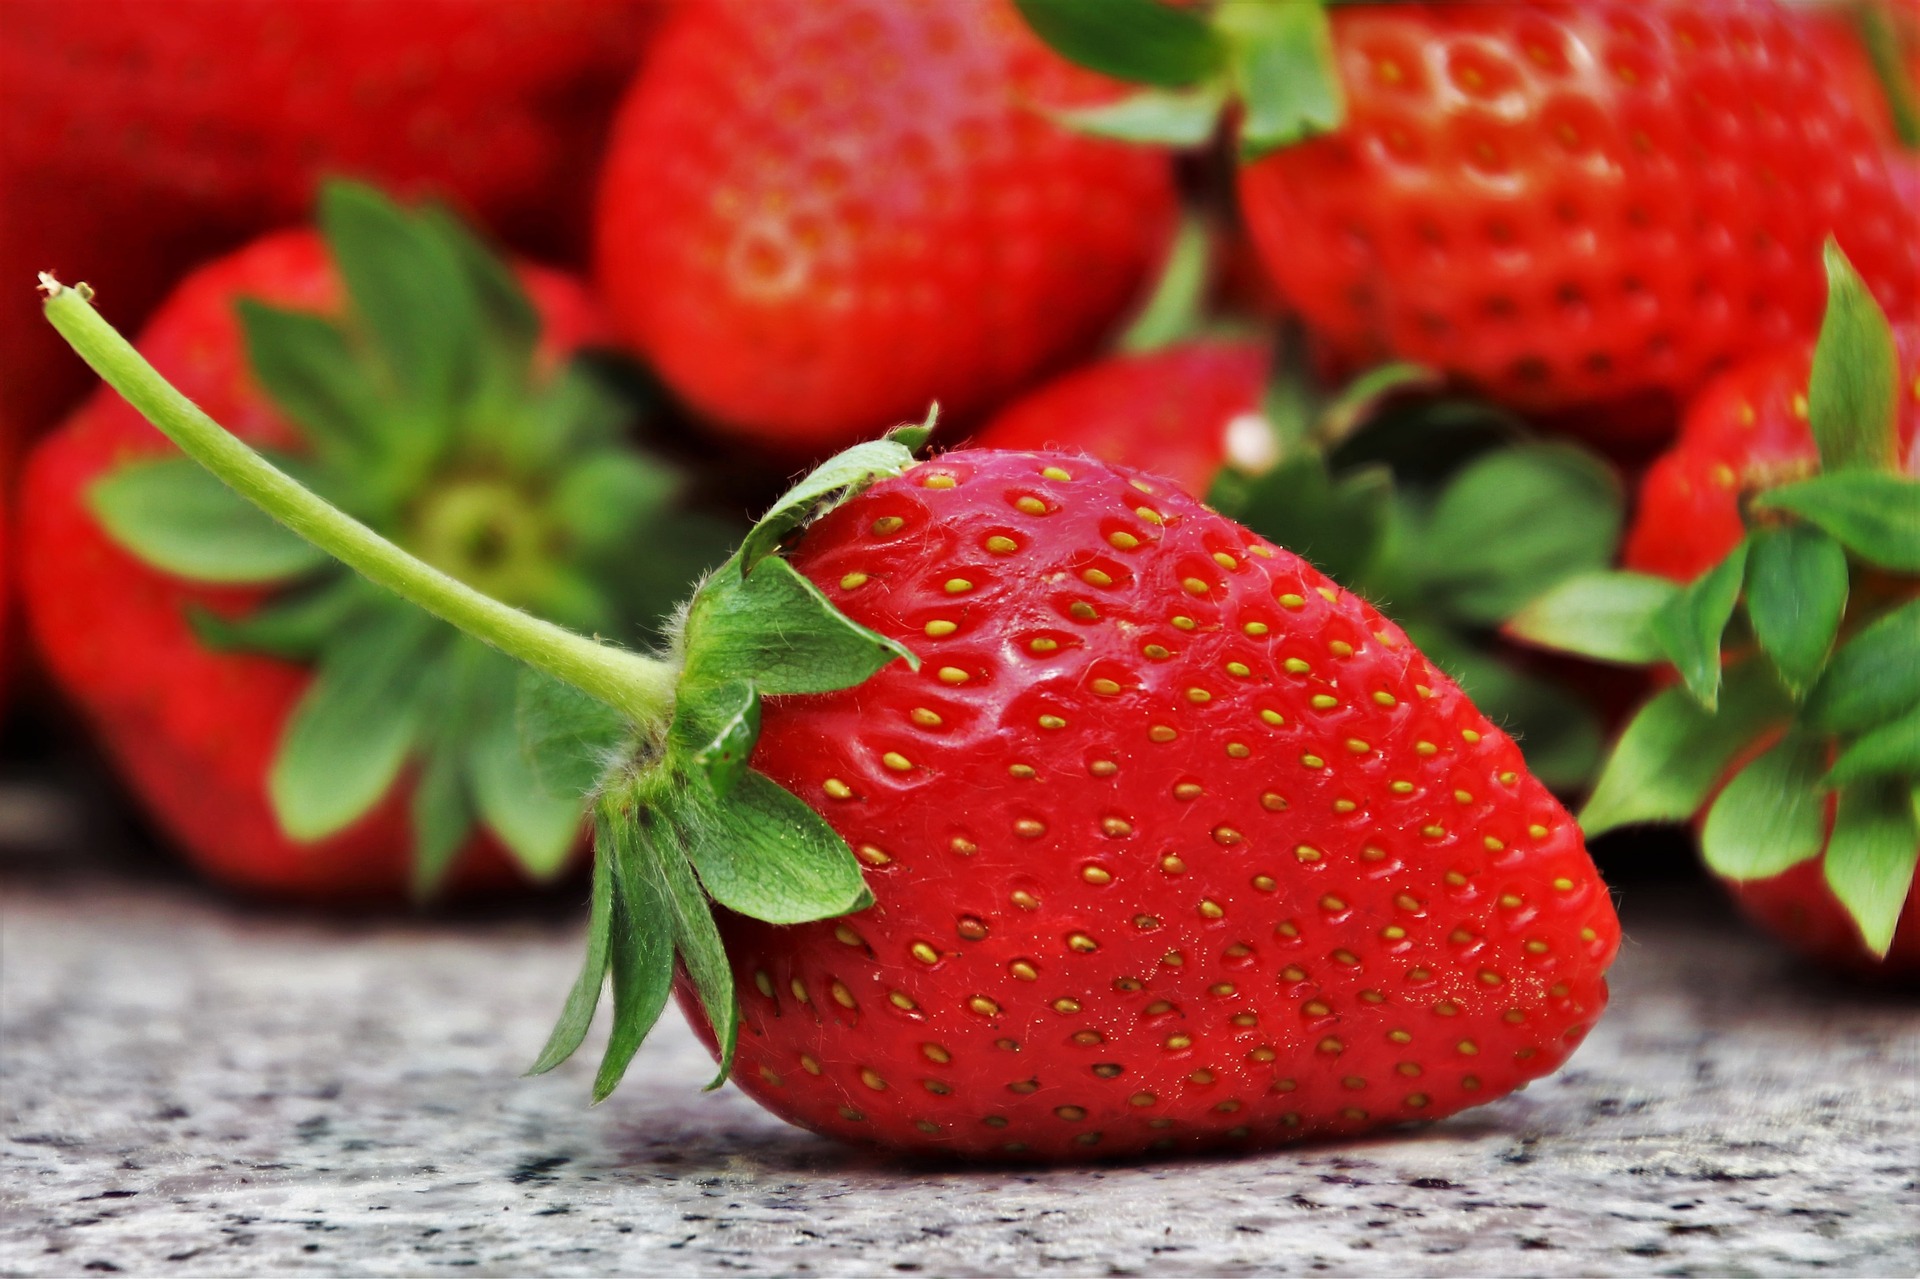 Strawberries 3359755 1920